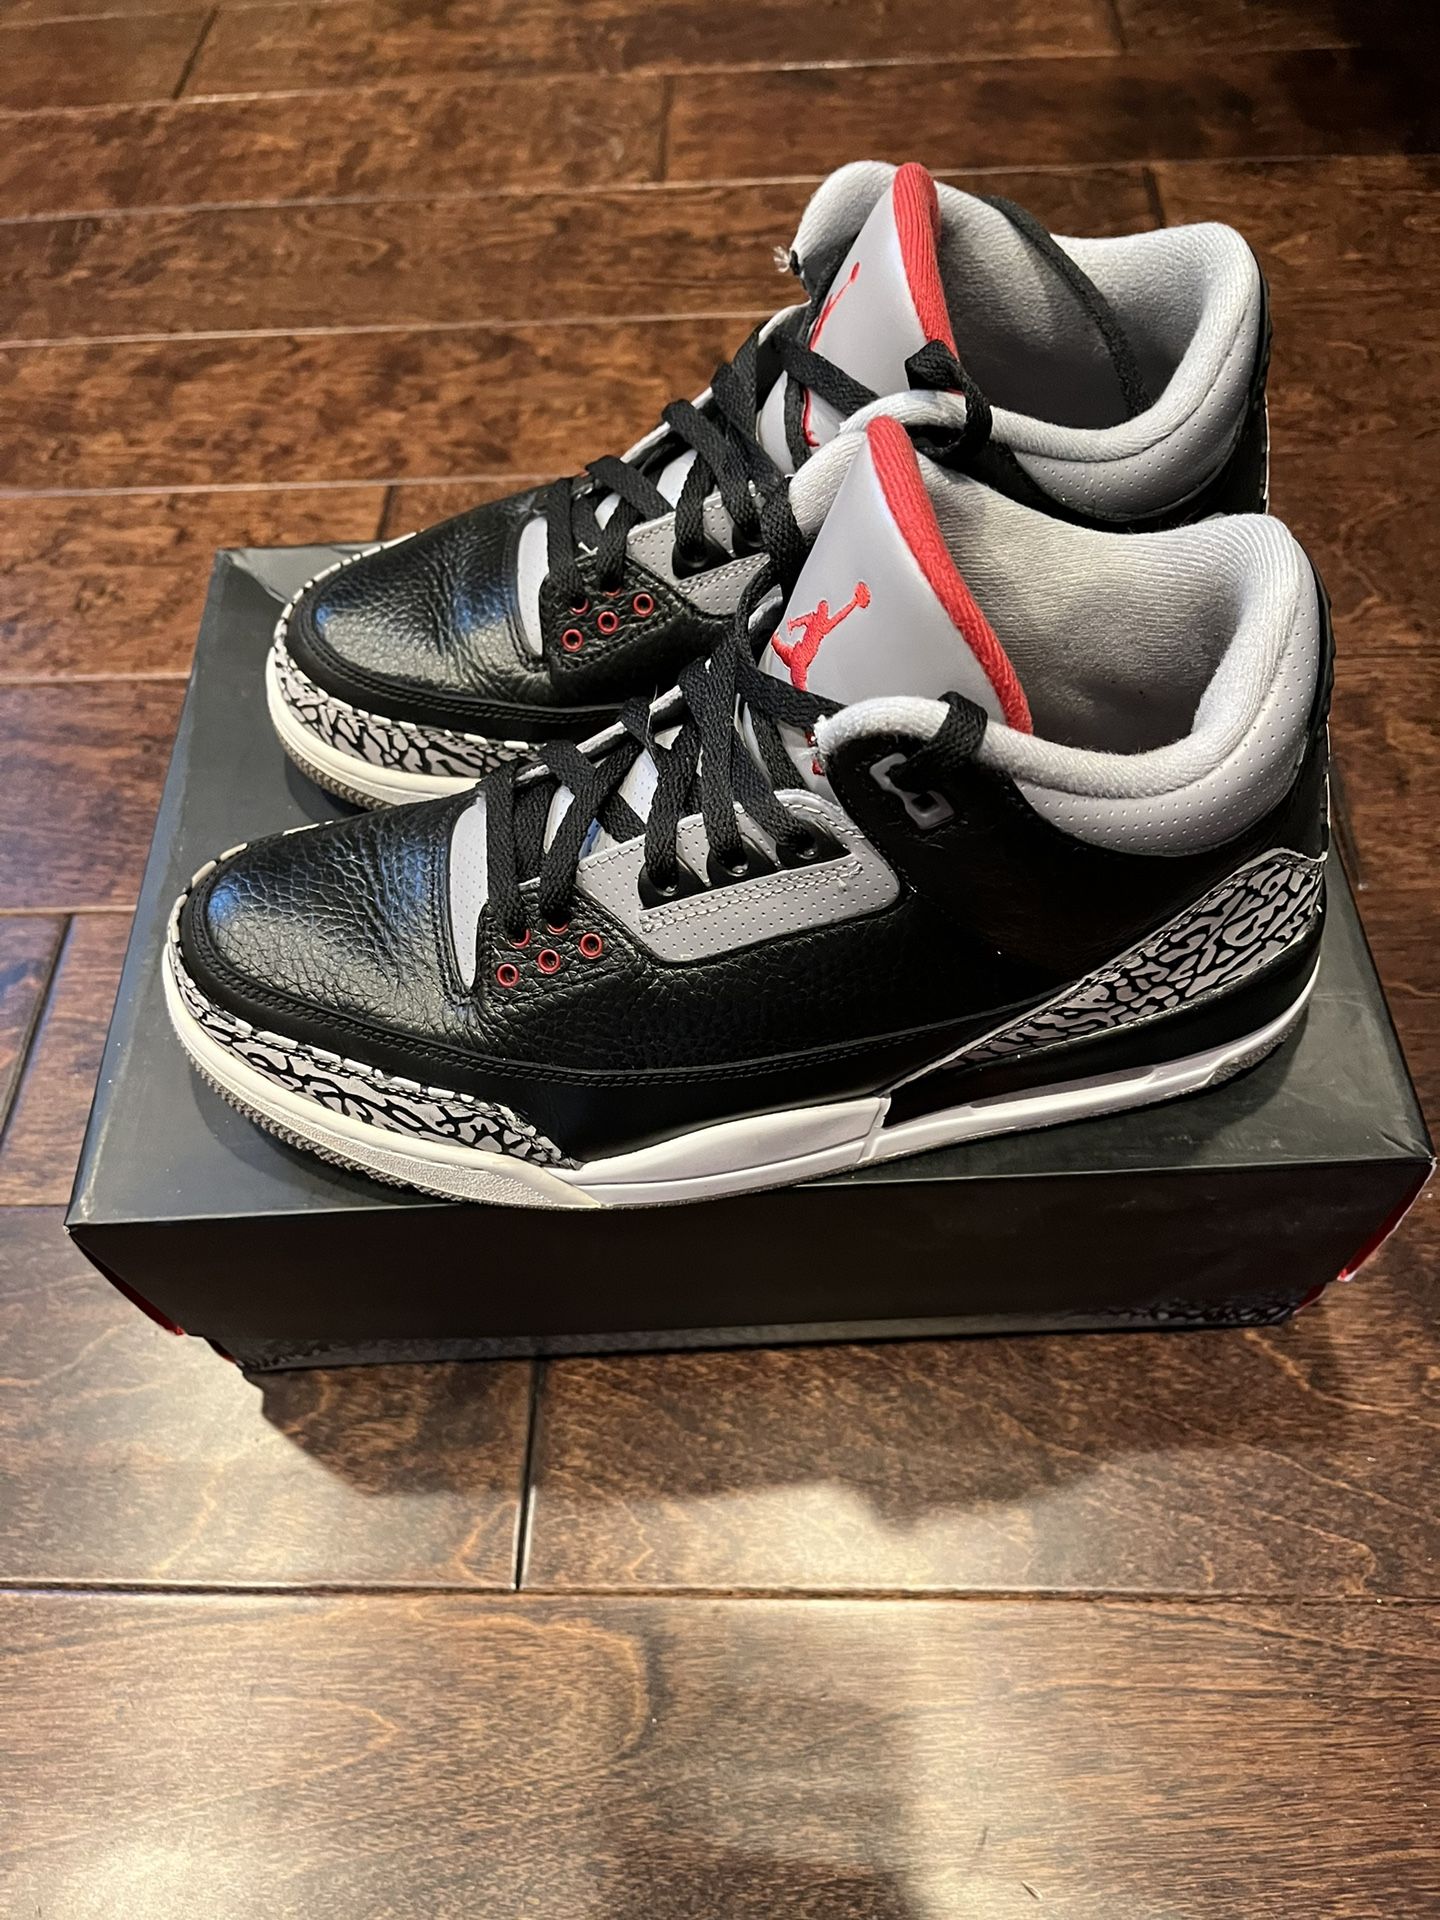 Nike Air Jordan 3 “Black cement”